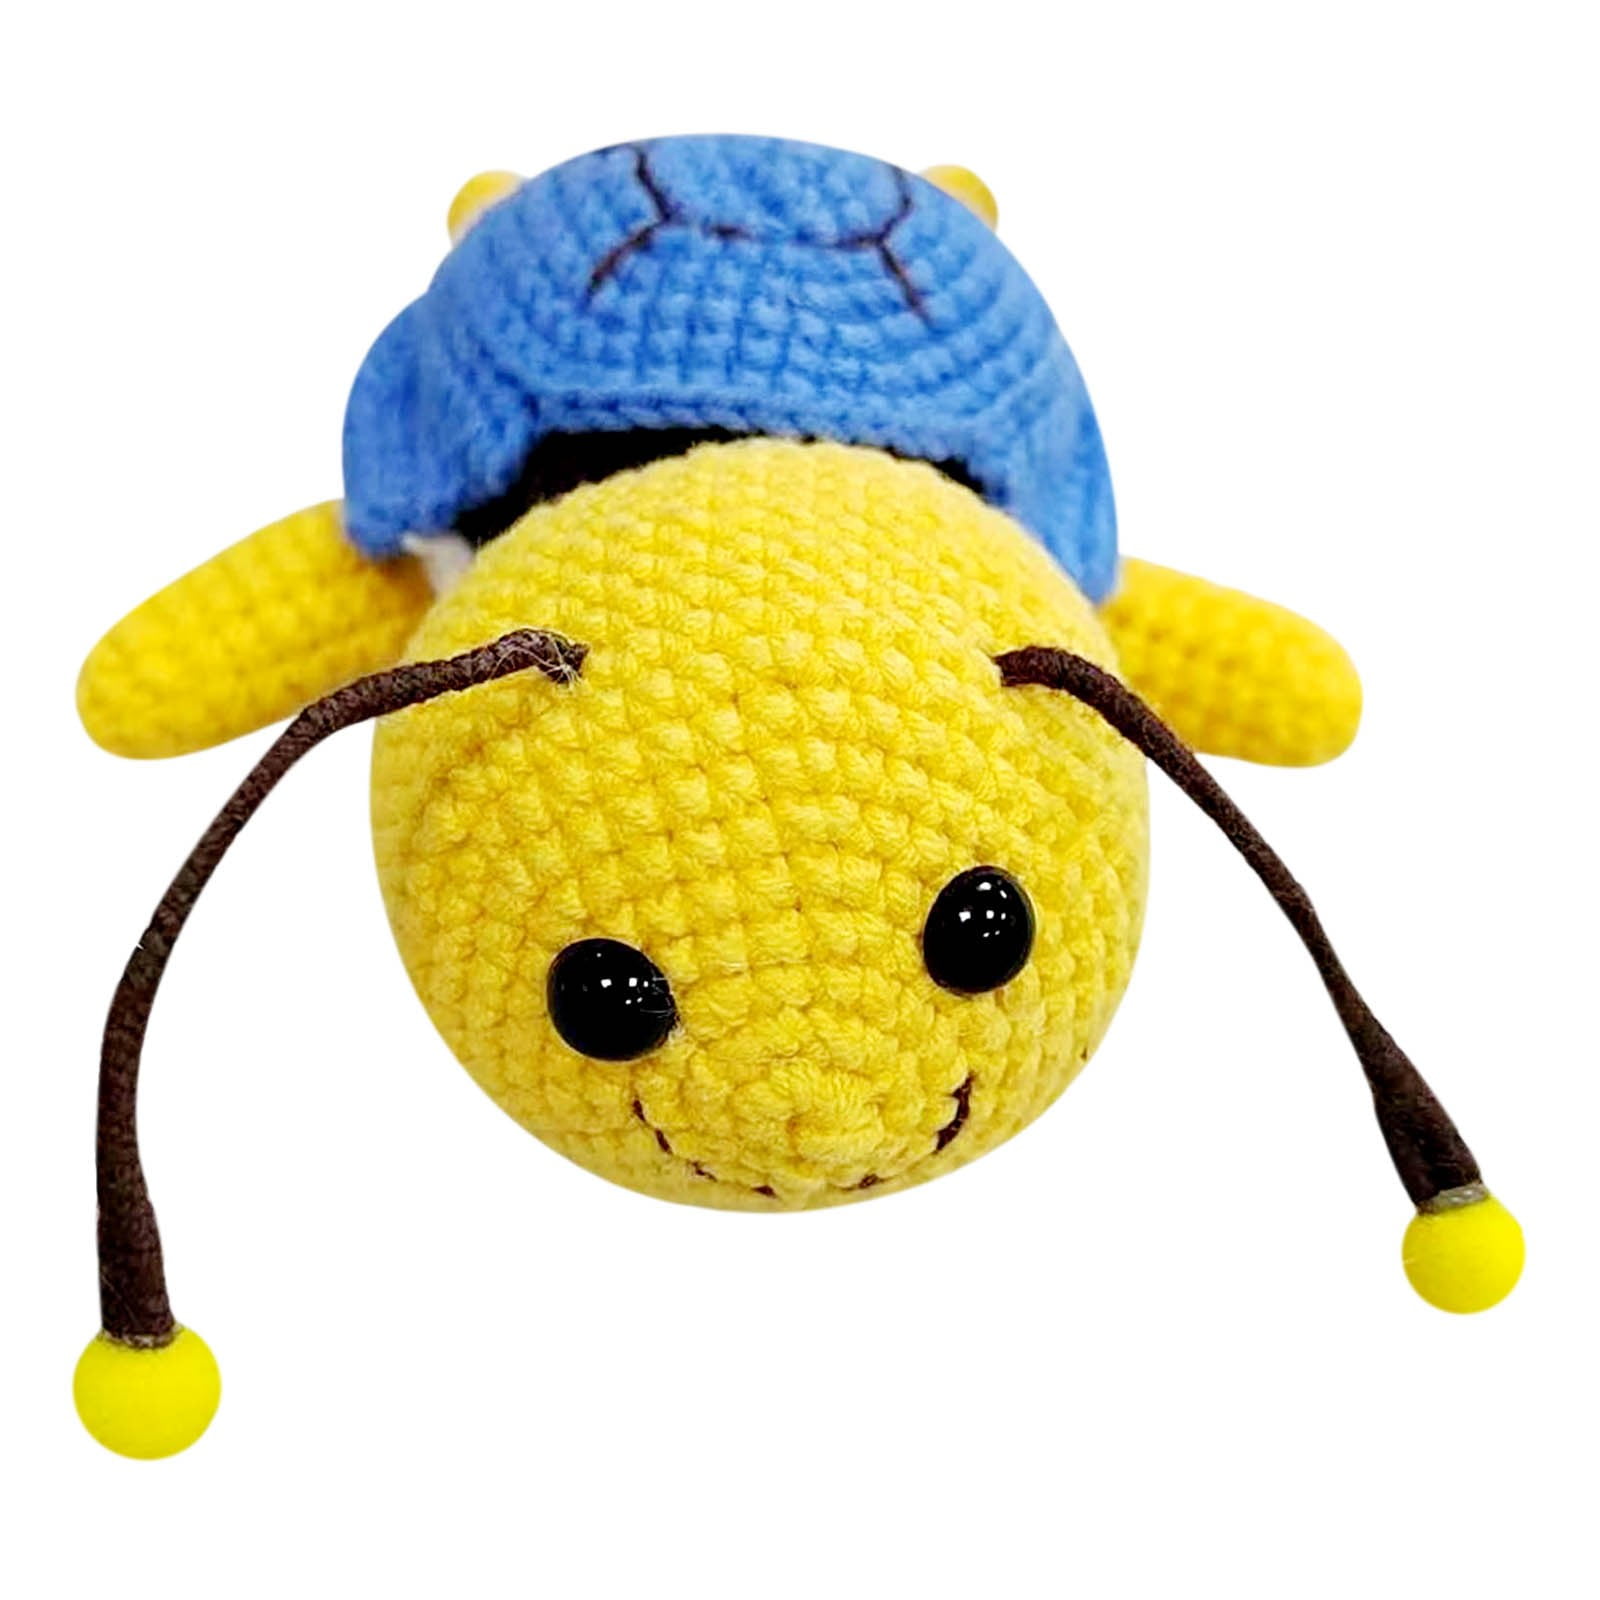 Sytle-Carry Beginner Crochet Kit, Crochet Kits for Kids and Adults, 3 Pcs  Crochet Animal Kit for Kids Beginners 